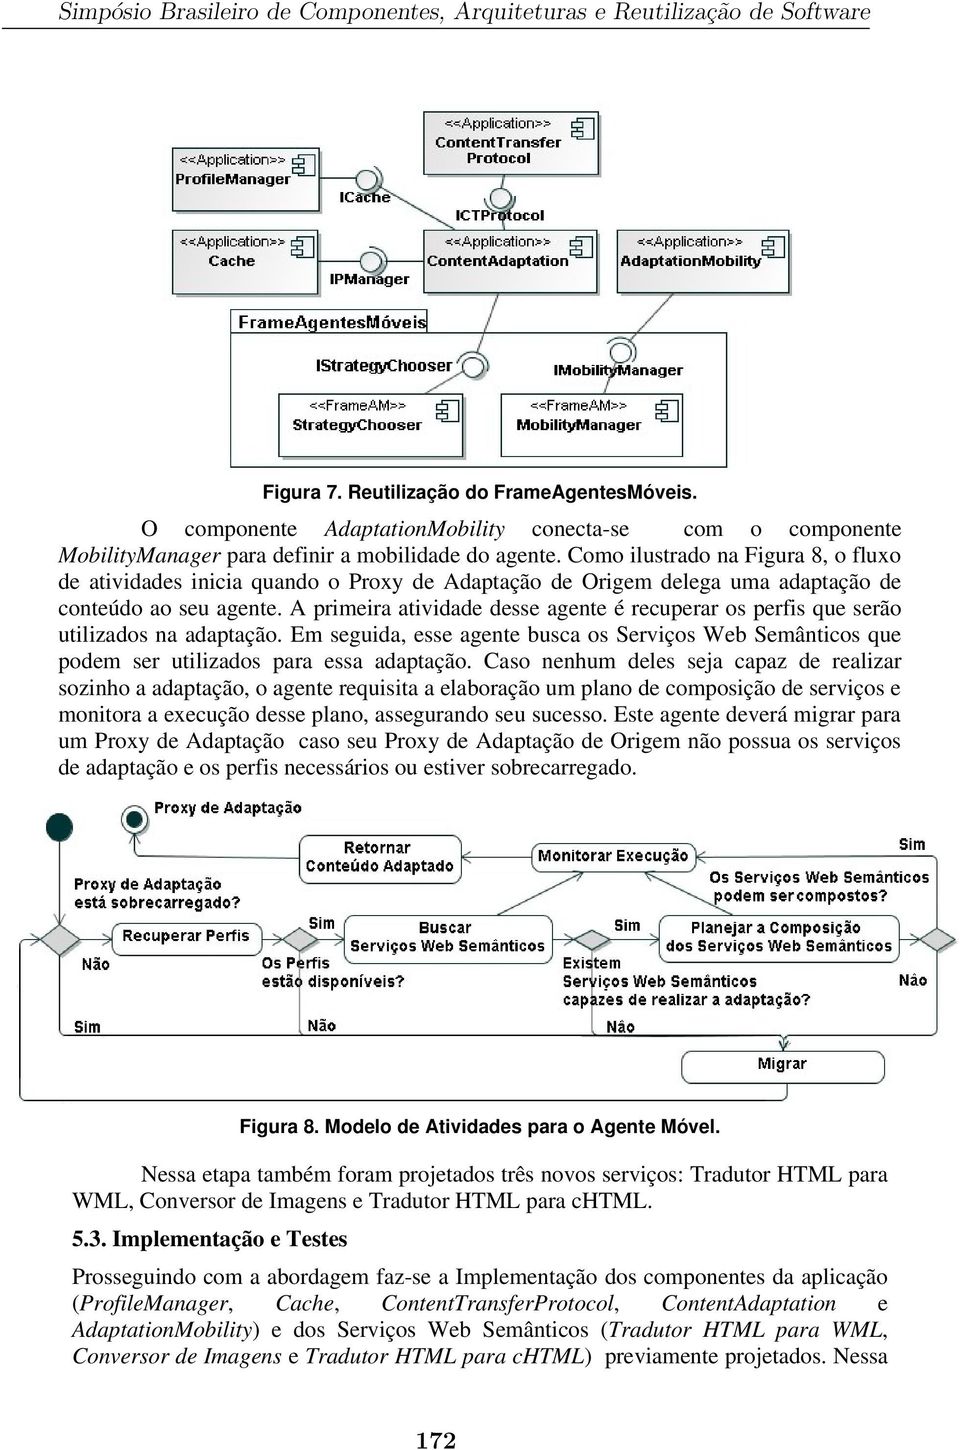 Como ilustrado na Figura 8, o fluxo de atividades inicia quando o Proxy de Adaptação de Origem delega uma adaptação de conteúdo ao seu agente.